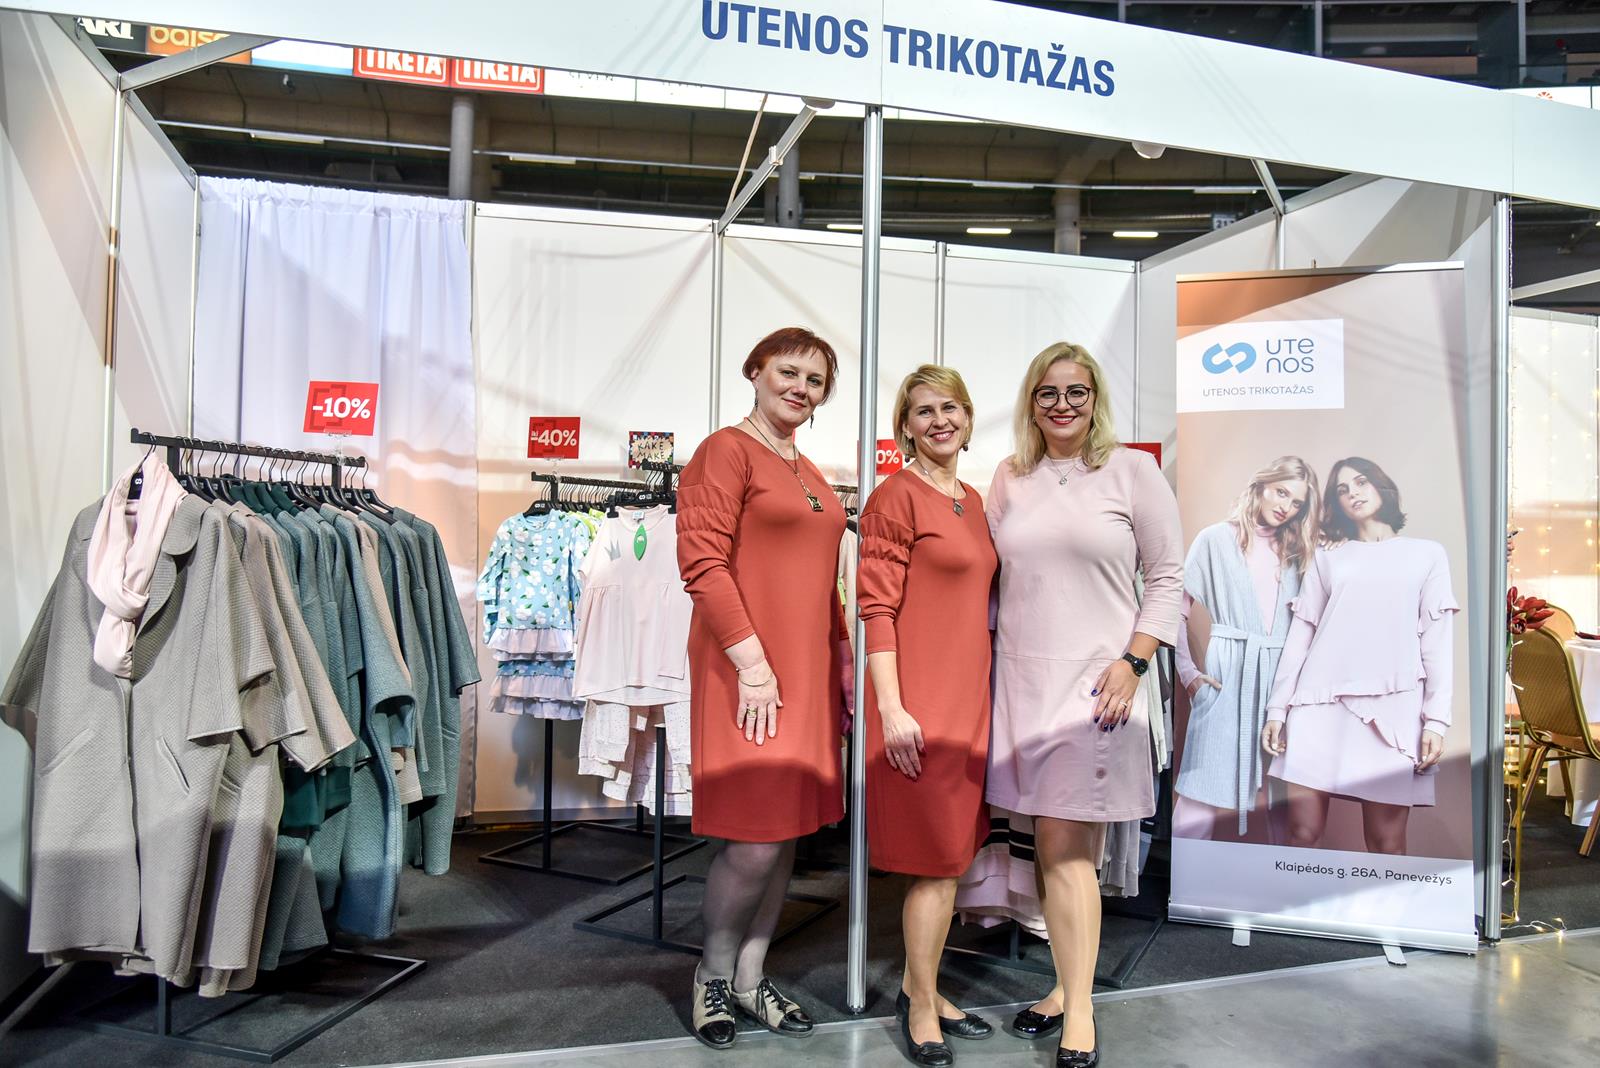 UTENOS – tai vienintelė firminė Utenos trikotažo parduotuvė Panevėžyje. Siūlome patogius, funkcionalius ir įvairiuose kontekstuose pritaikomus drabužius.